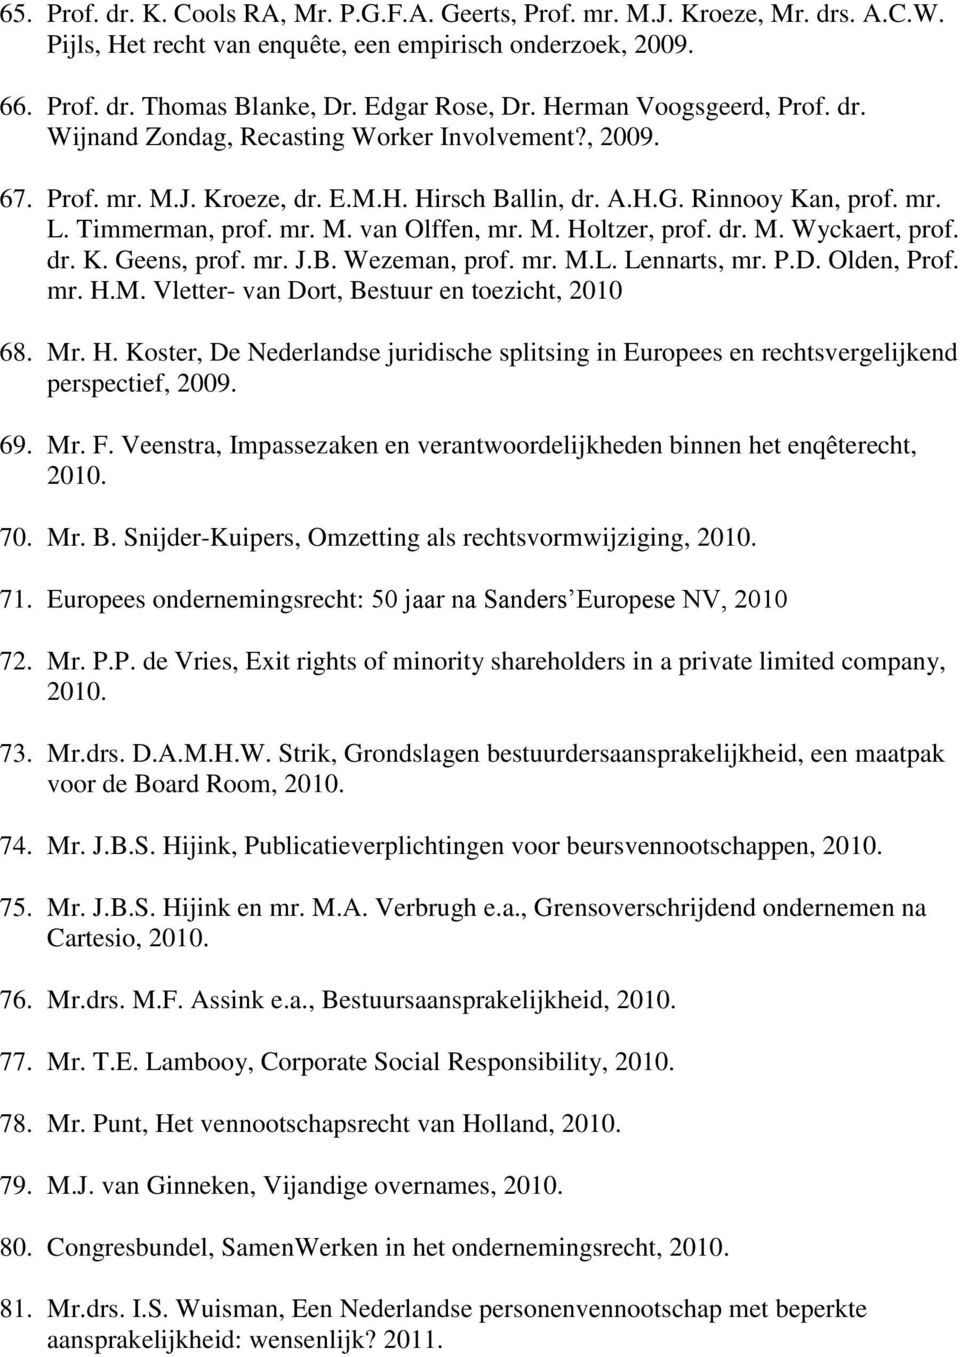 M. Holtzer, prof. dr. M. Wyckaert, prof. dr. K. Geens, prof. mr. J.B. Wezeman, prof. mr. M.L. Lennarts, mr. P.D. Olden, Prof. mr. H.M. Vletter- van Dort, Bestuur en toezicht, 2010 68. Mr. H. Koster, De Nederlandse juridische splitsing in Europees en rechtsvergelijkend perspectief, 2009.